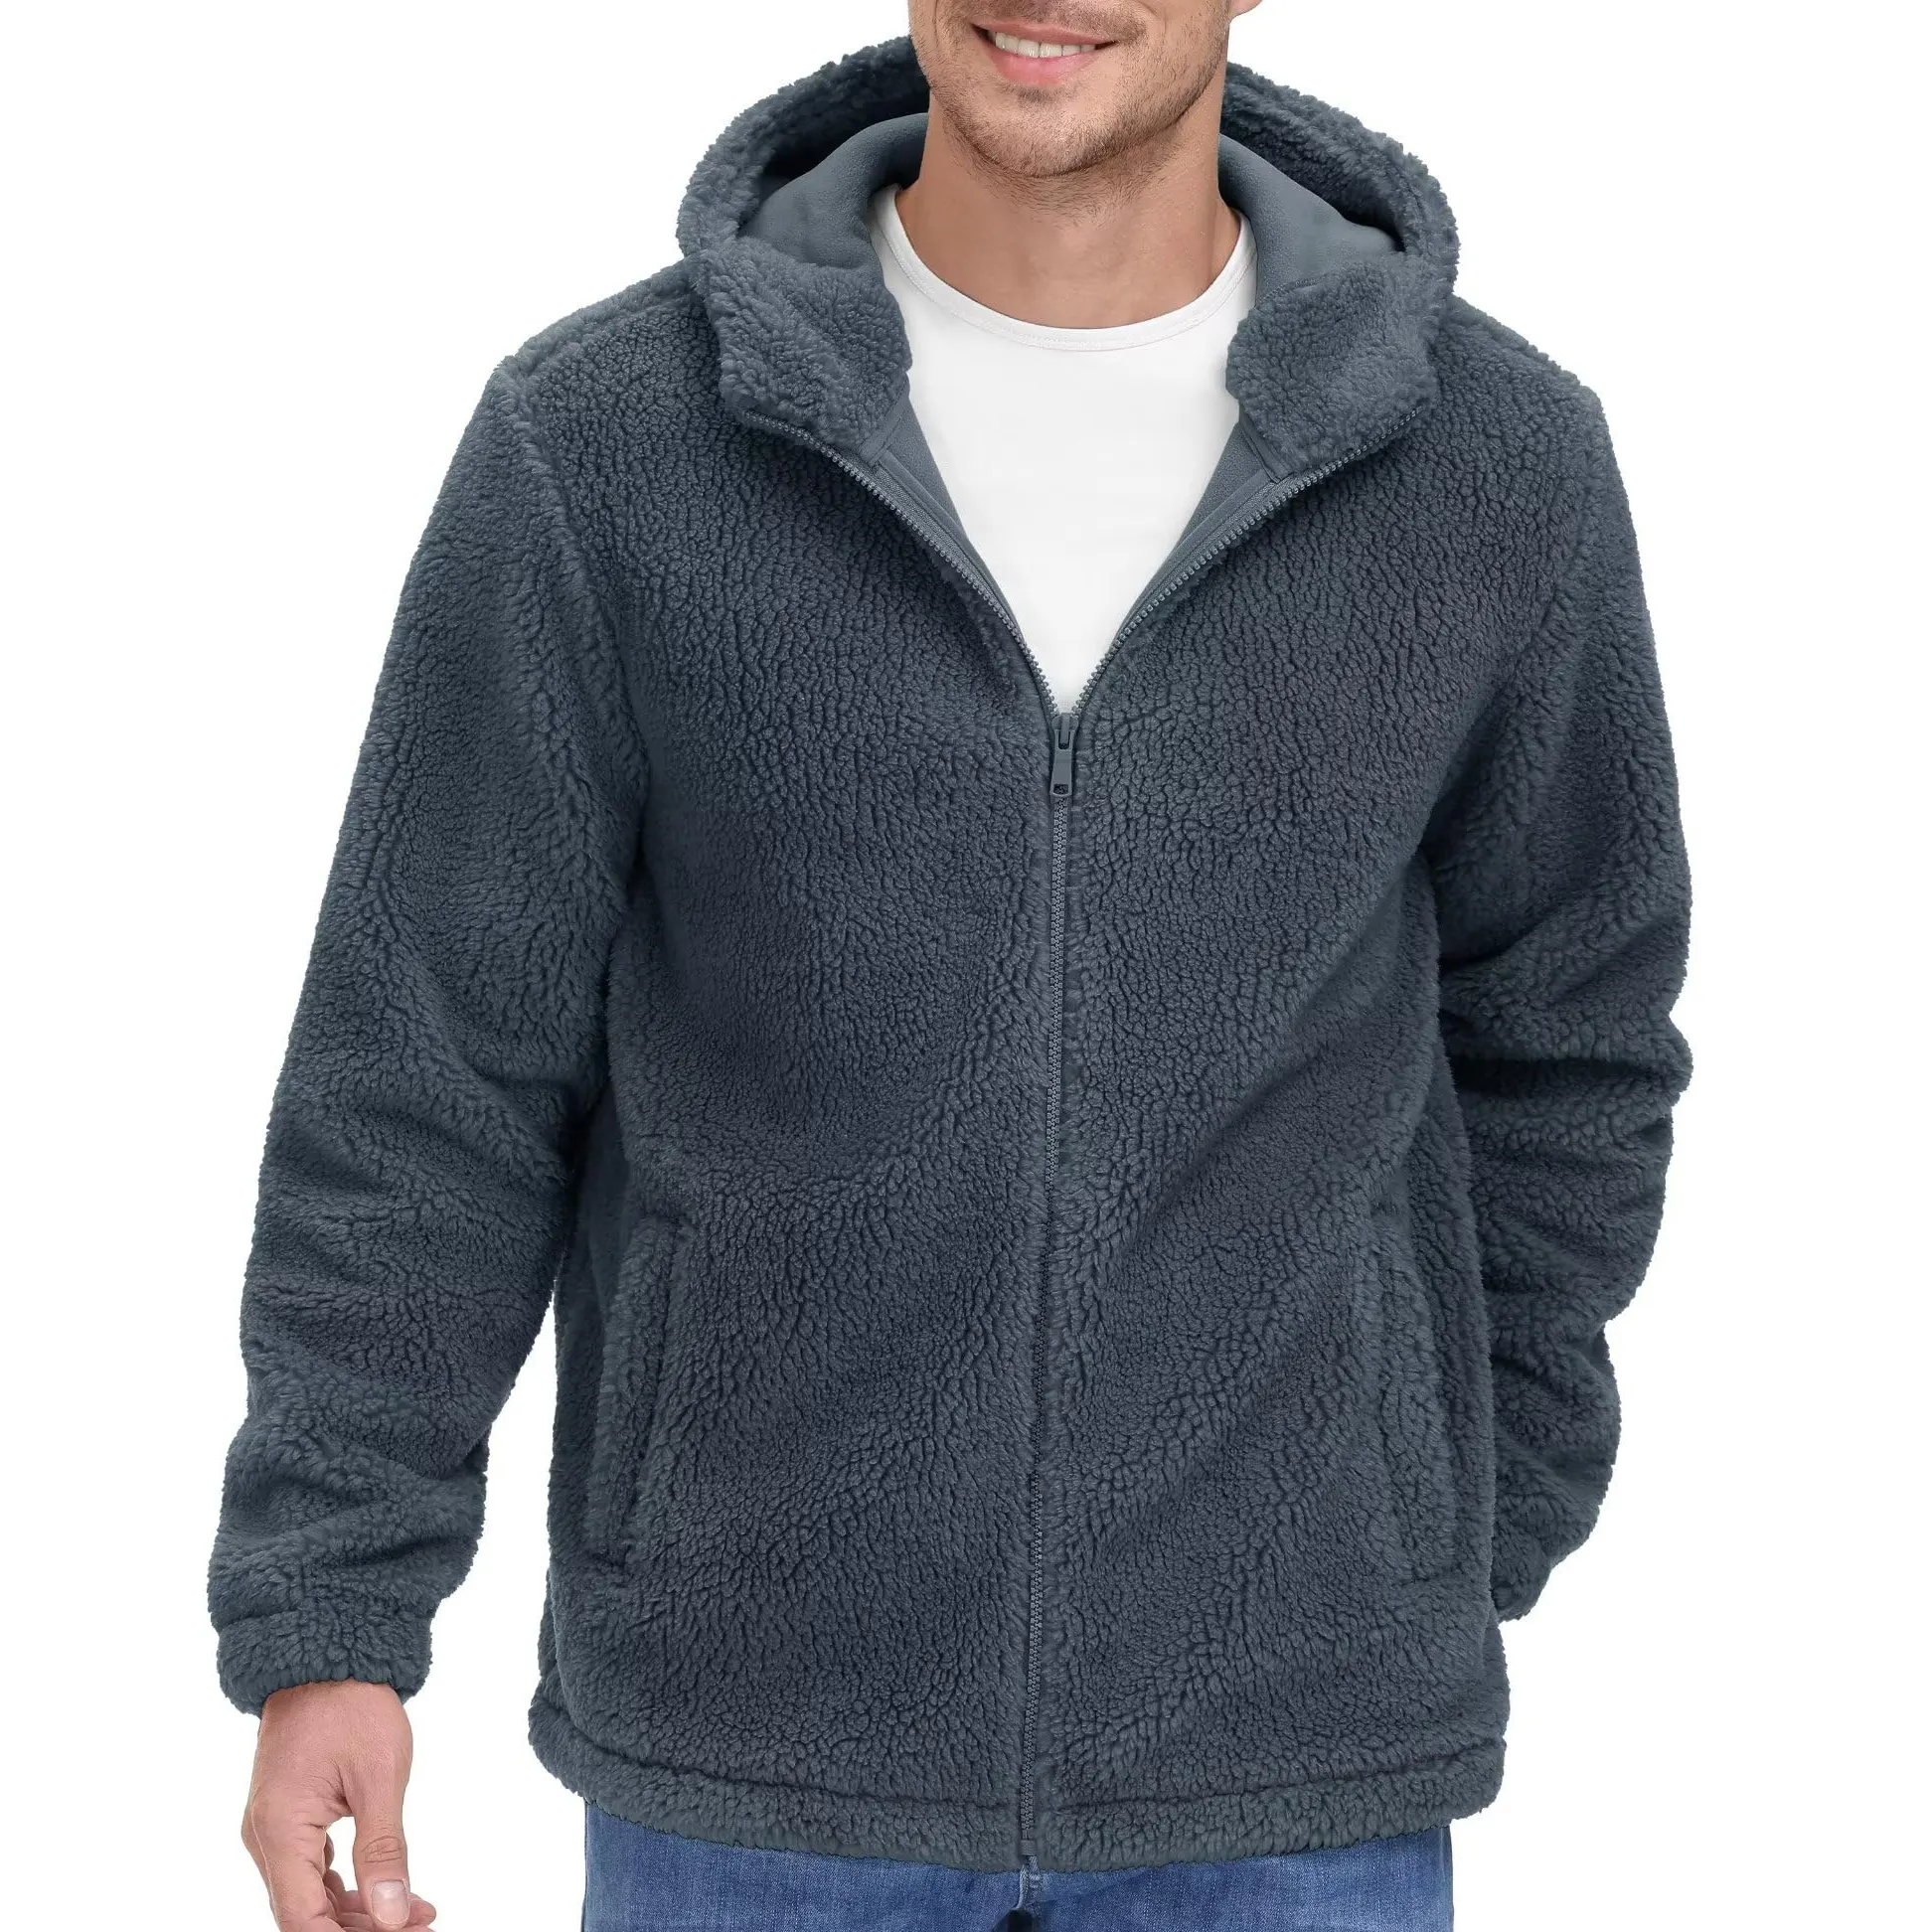 Breathable soft Zip Up Winter Wear Sherpa Fleece Jacket Coat Latest Design best selling heavyweight Sherpa Fleece Jacket